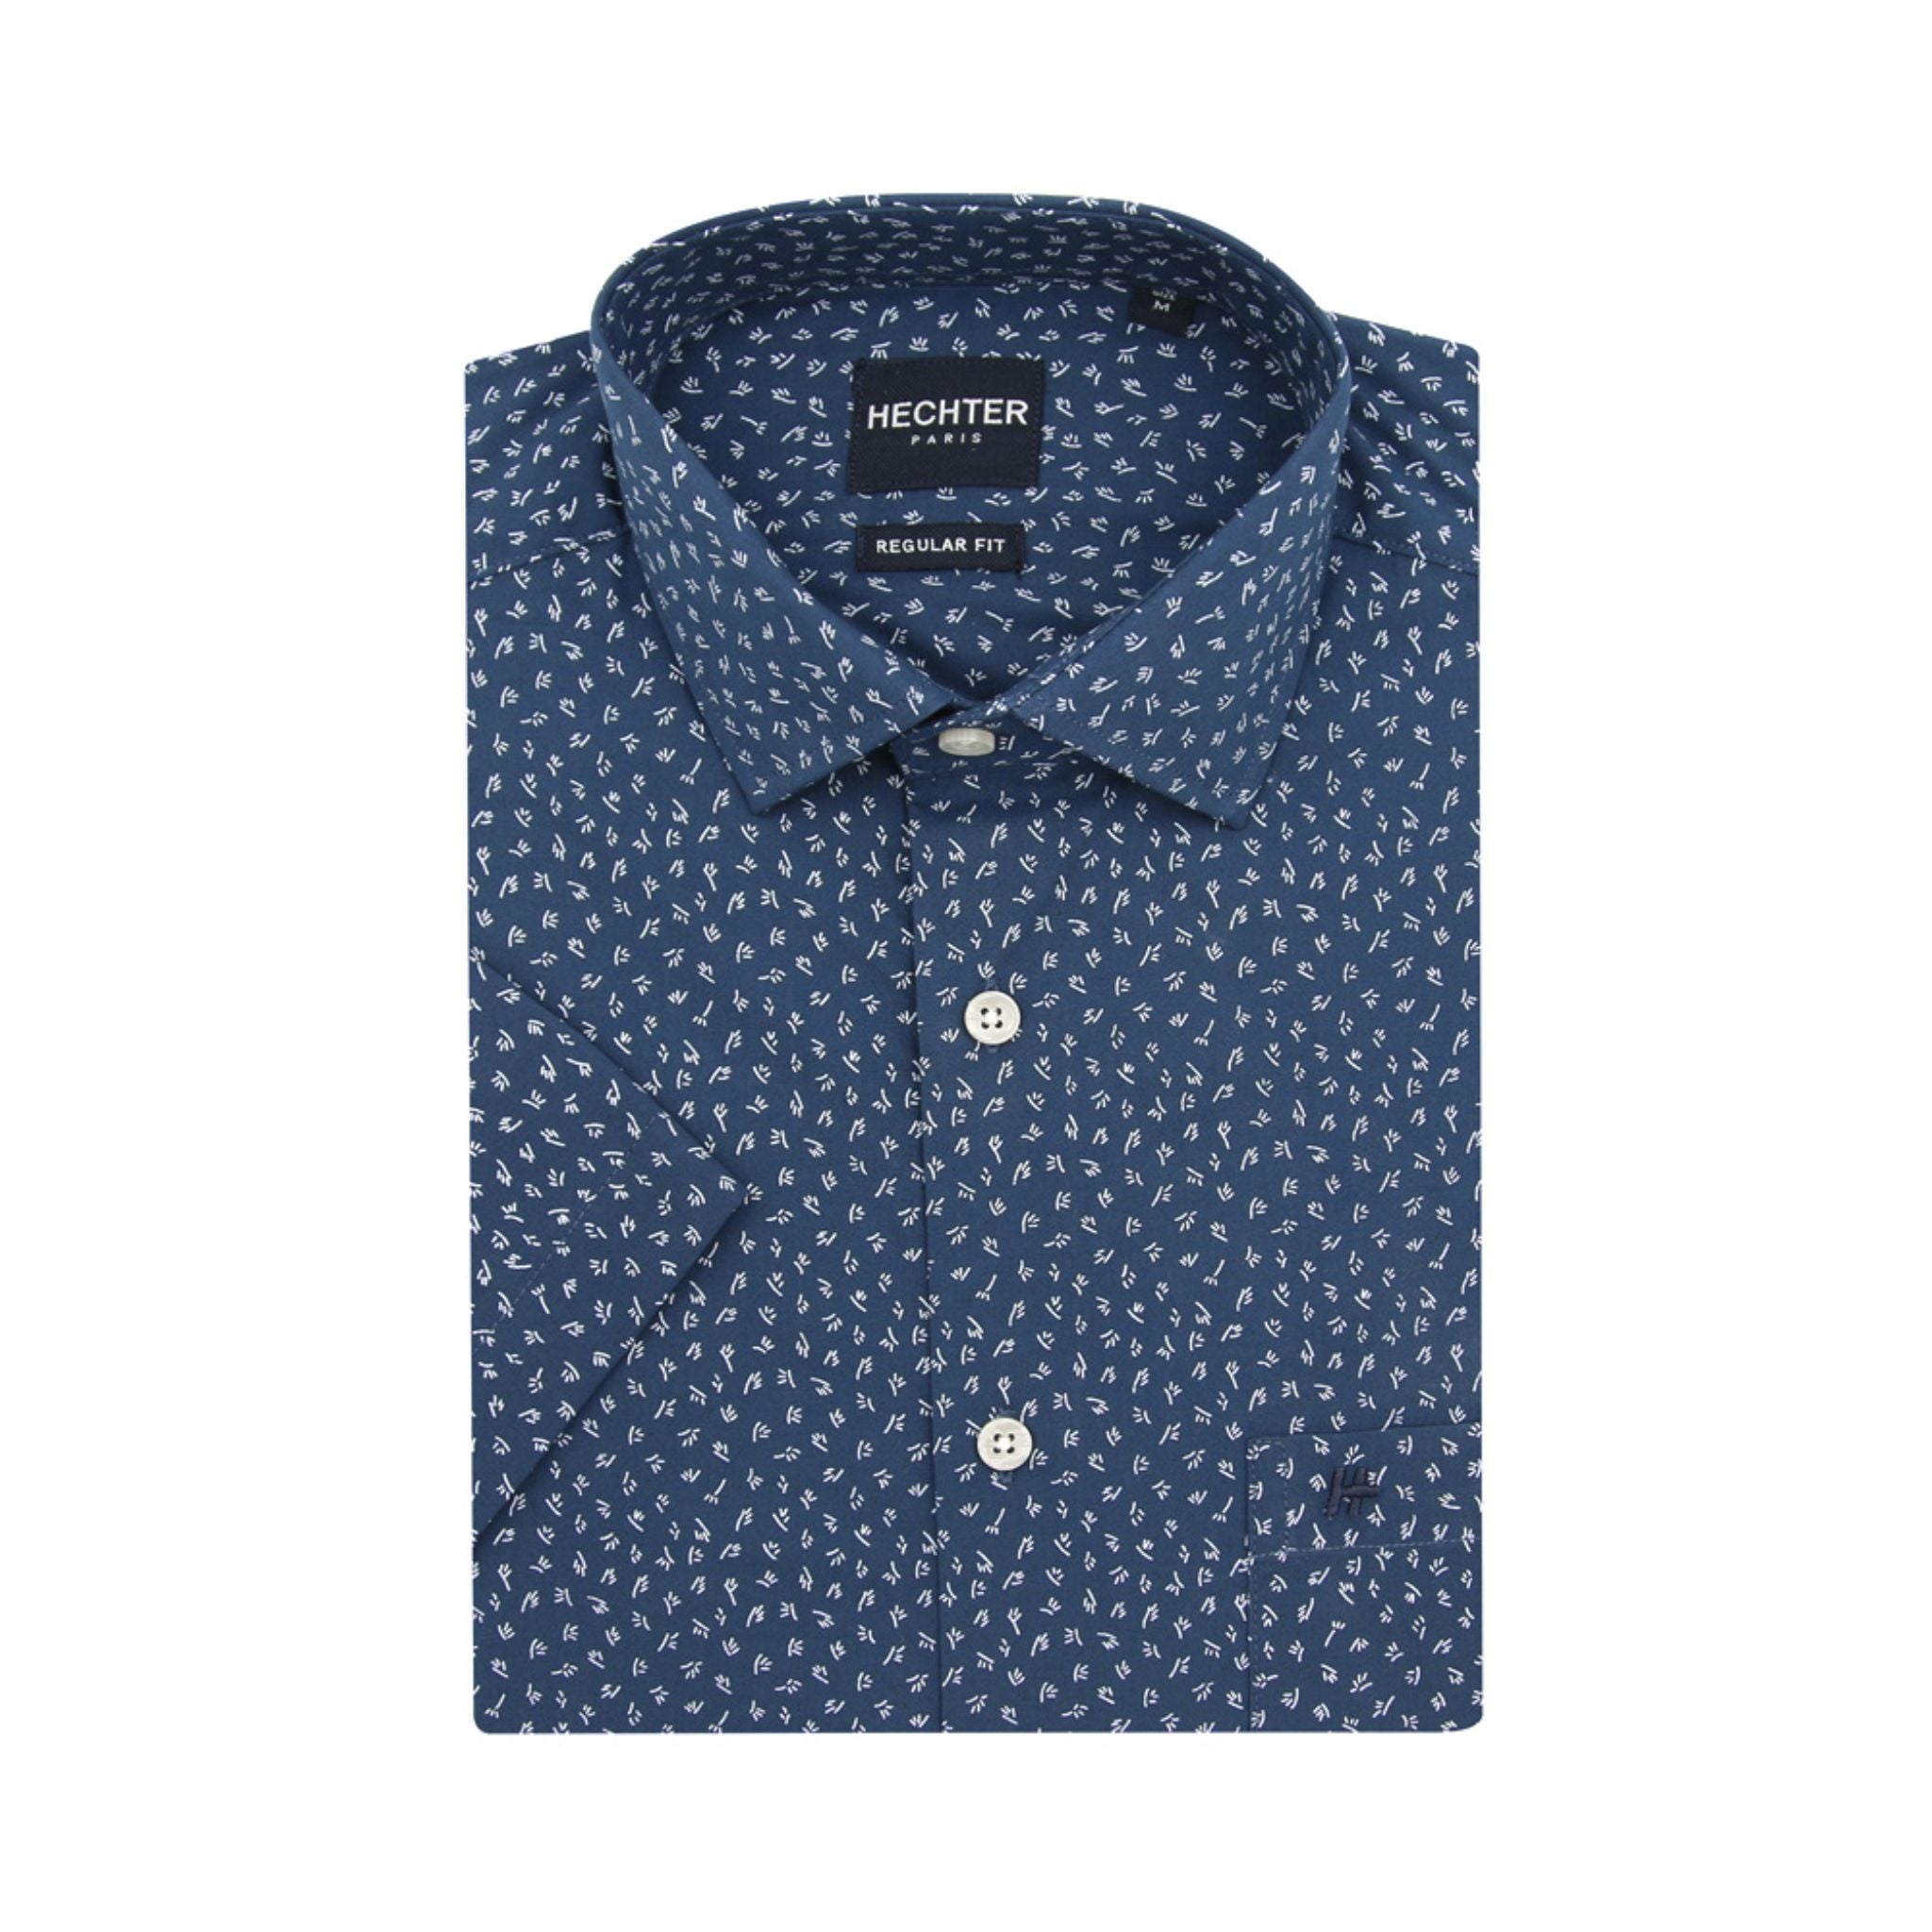 HECHTER Short-Sleeved Shirt - Blue & White Print